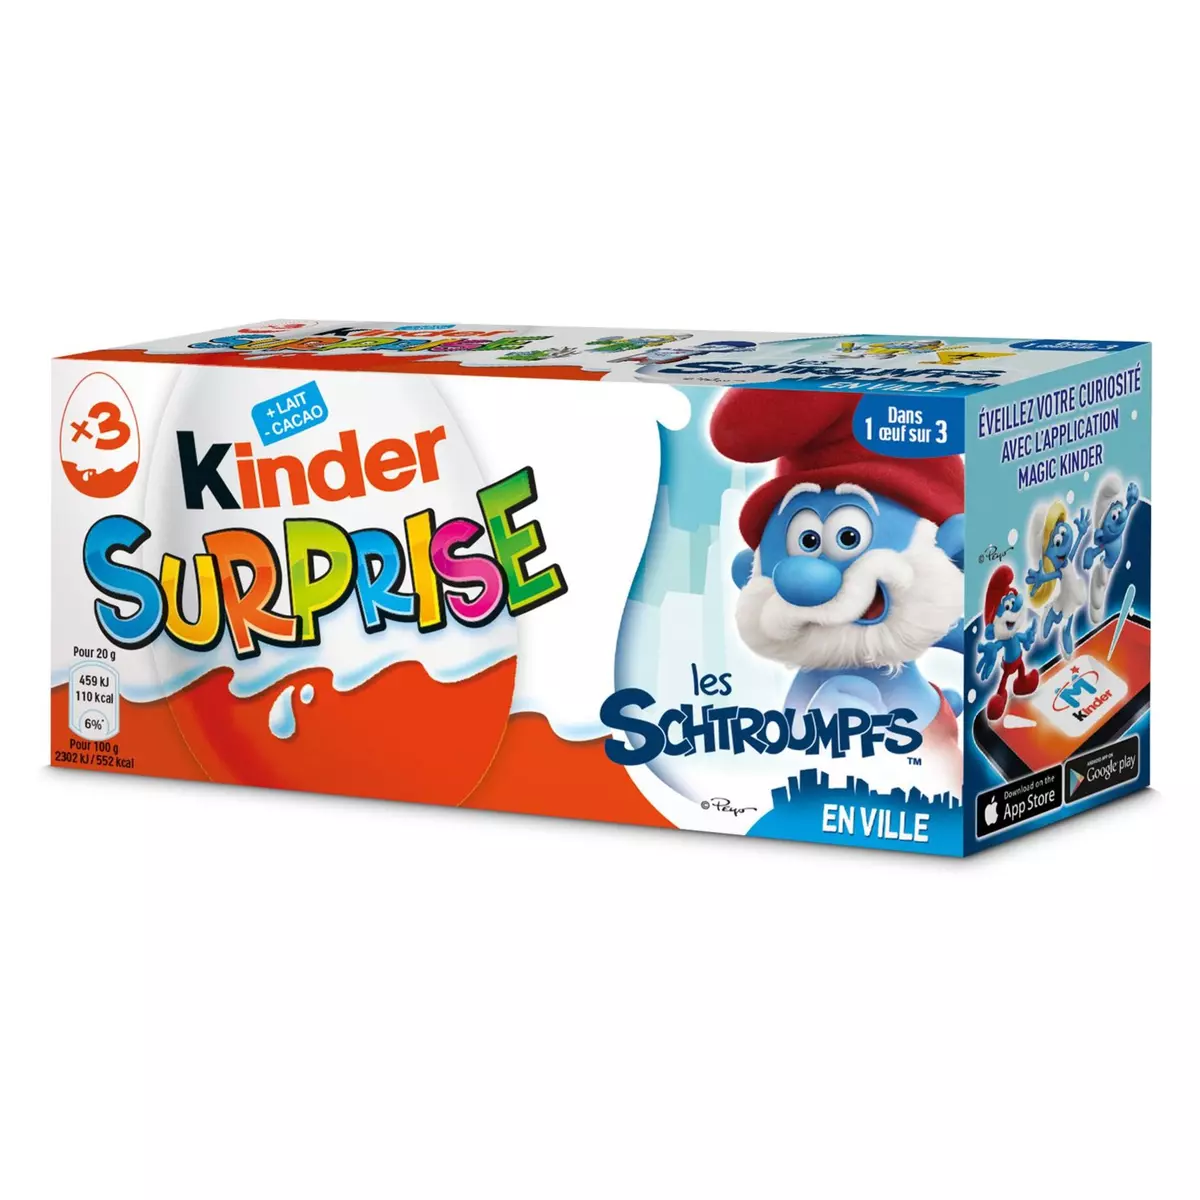 KINDER Kinder surprise unisexe x3 -60g